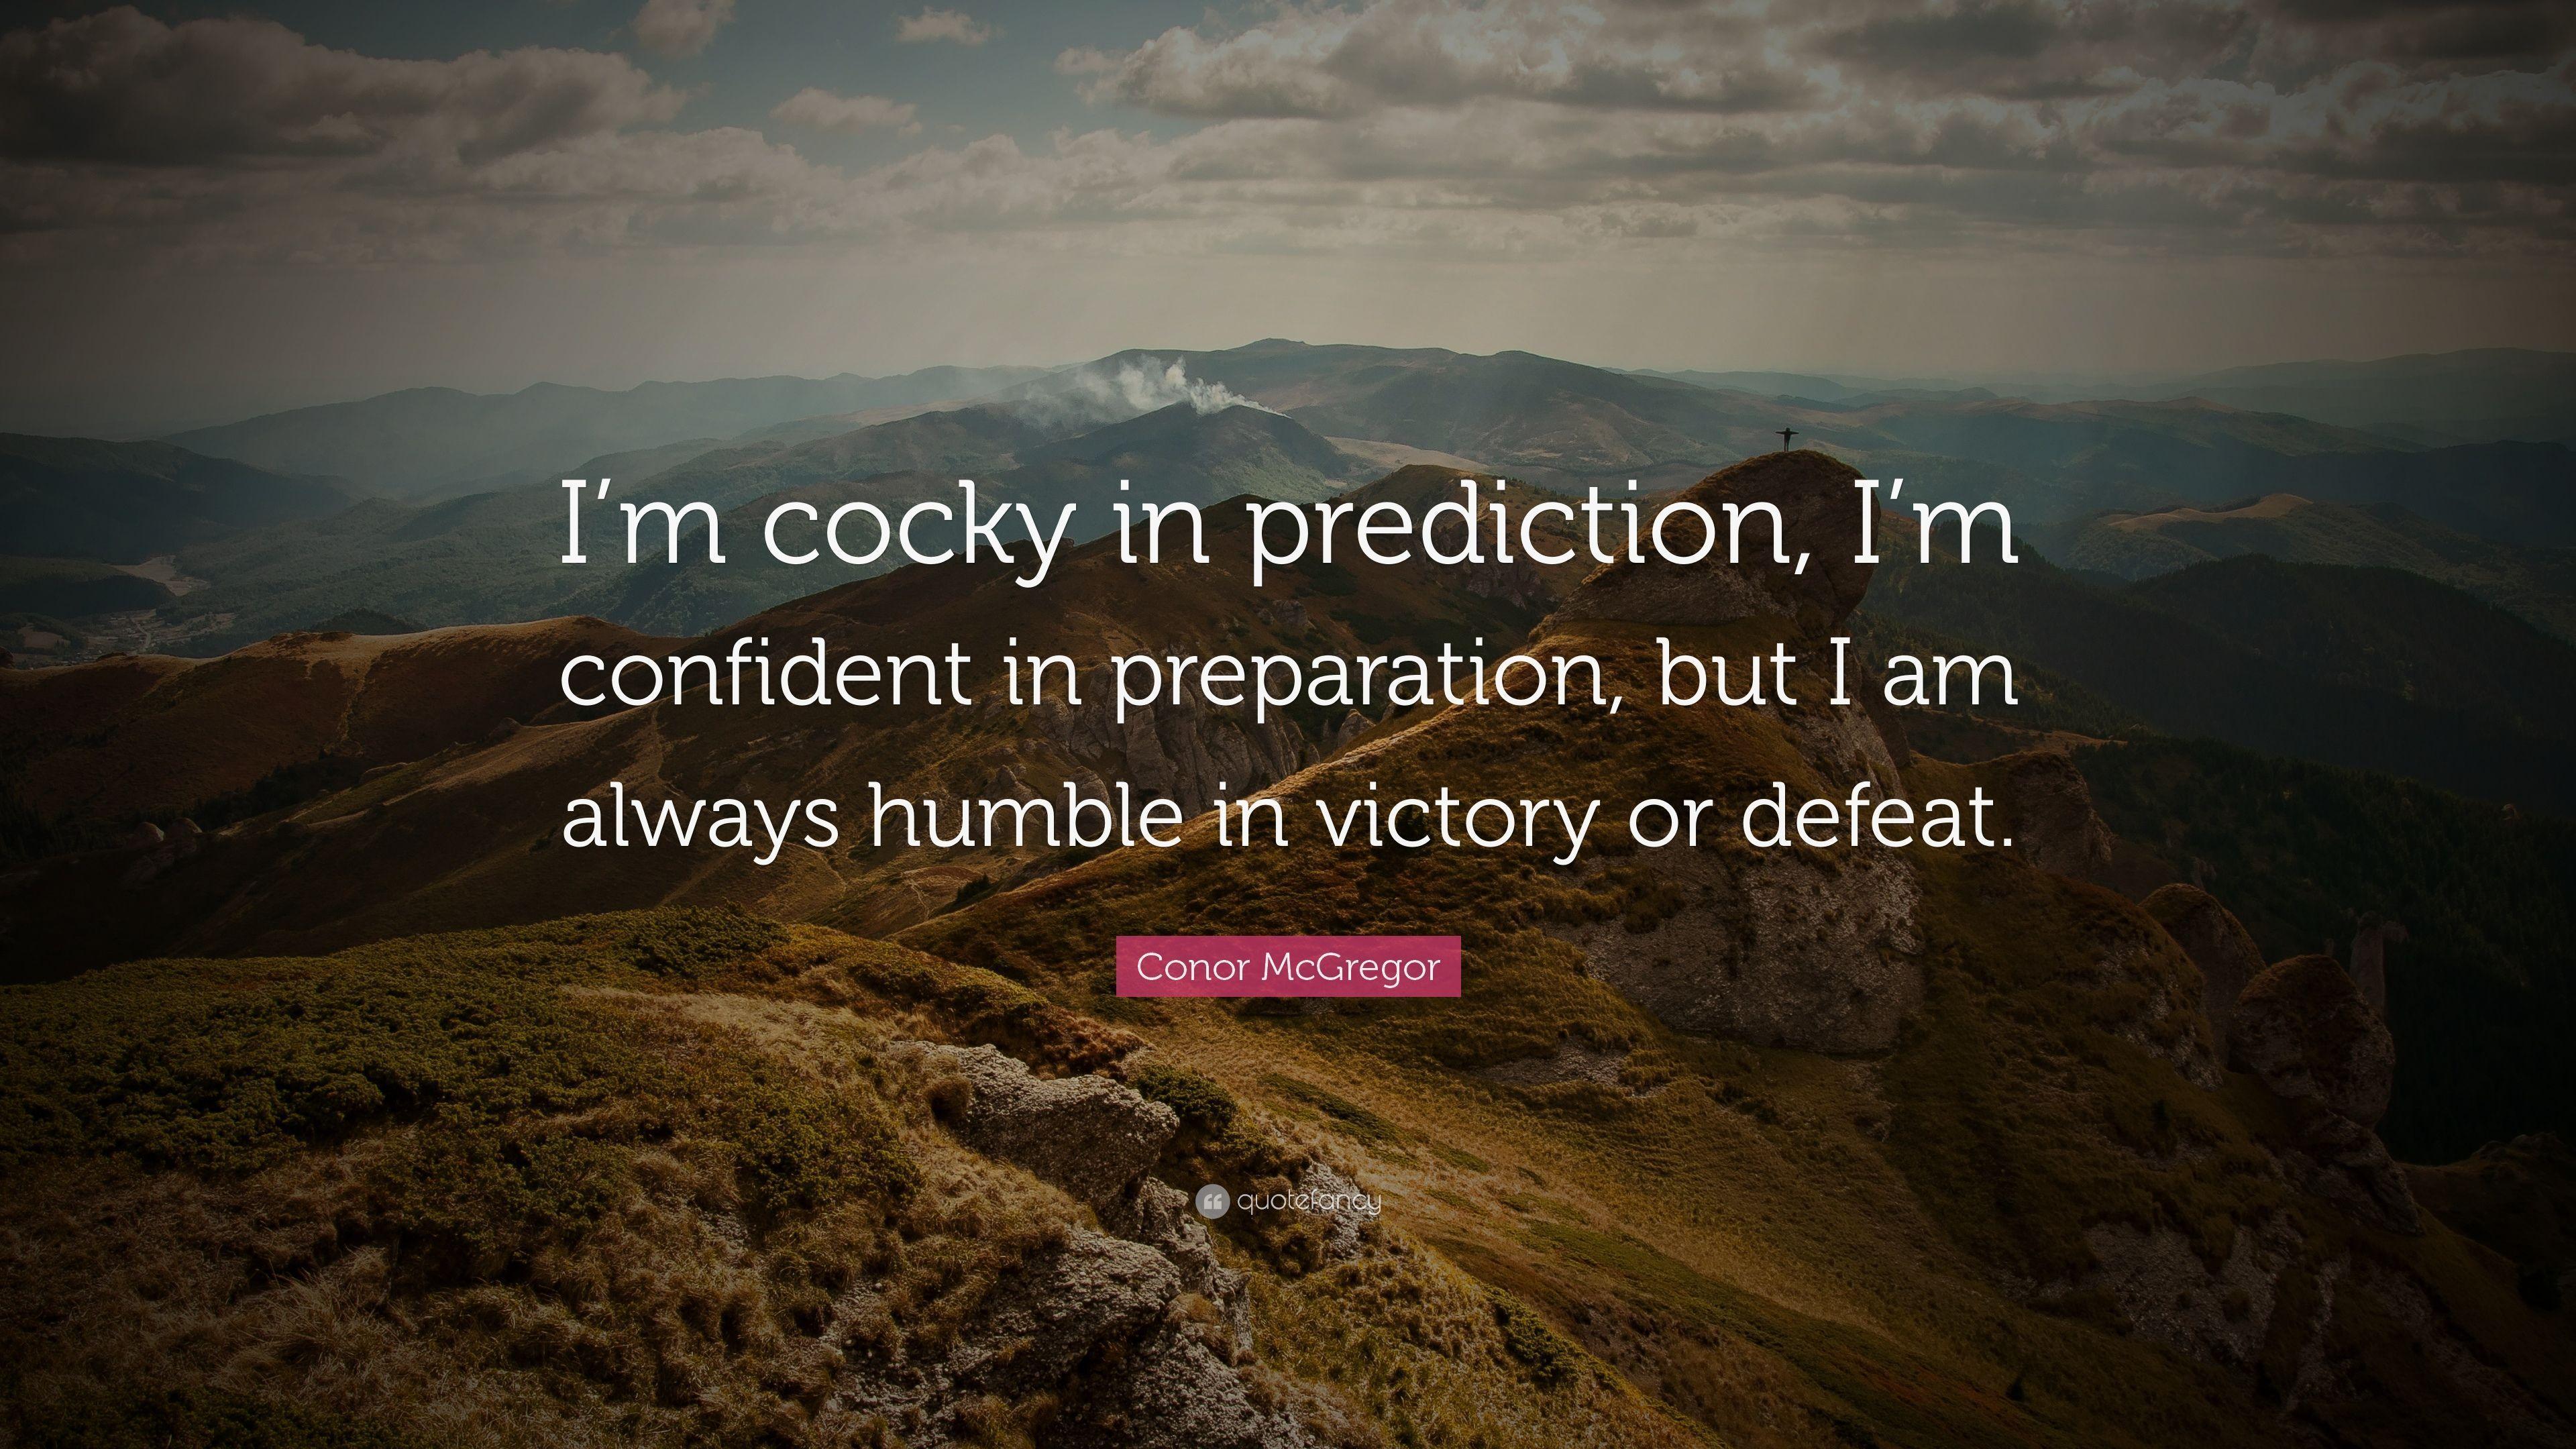 Conor McGregor Quote: “I'm cocky in prediction, I'm confident